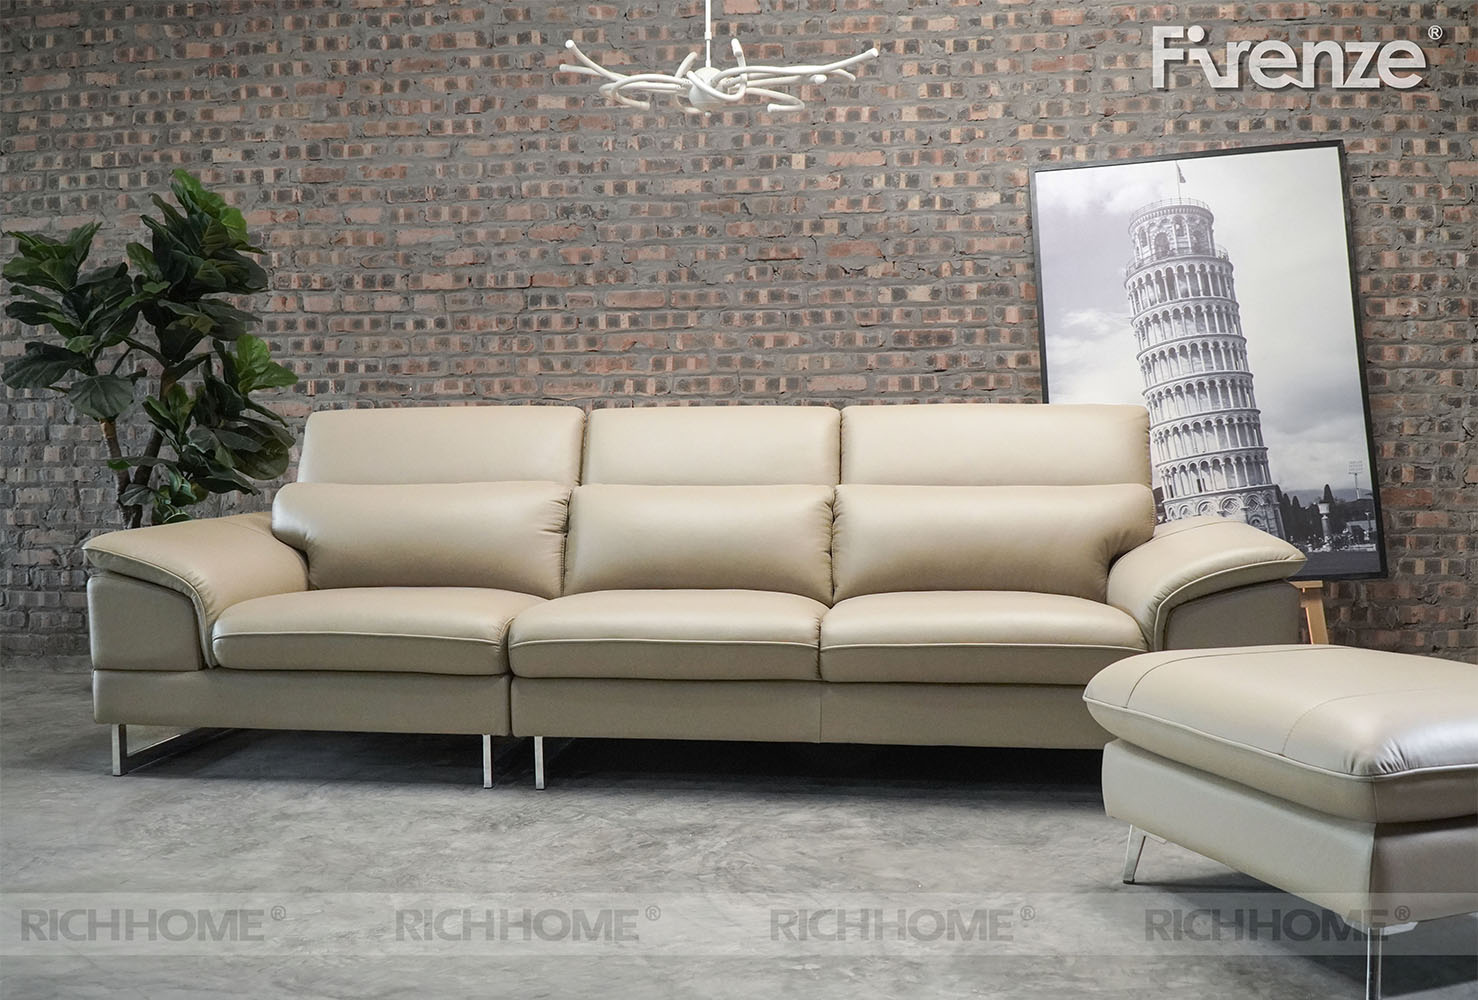 Chọn sofa chung cư nhỏ đẹp theo kiểu dáng và phong cách - Ảnh 3